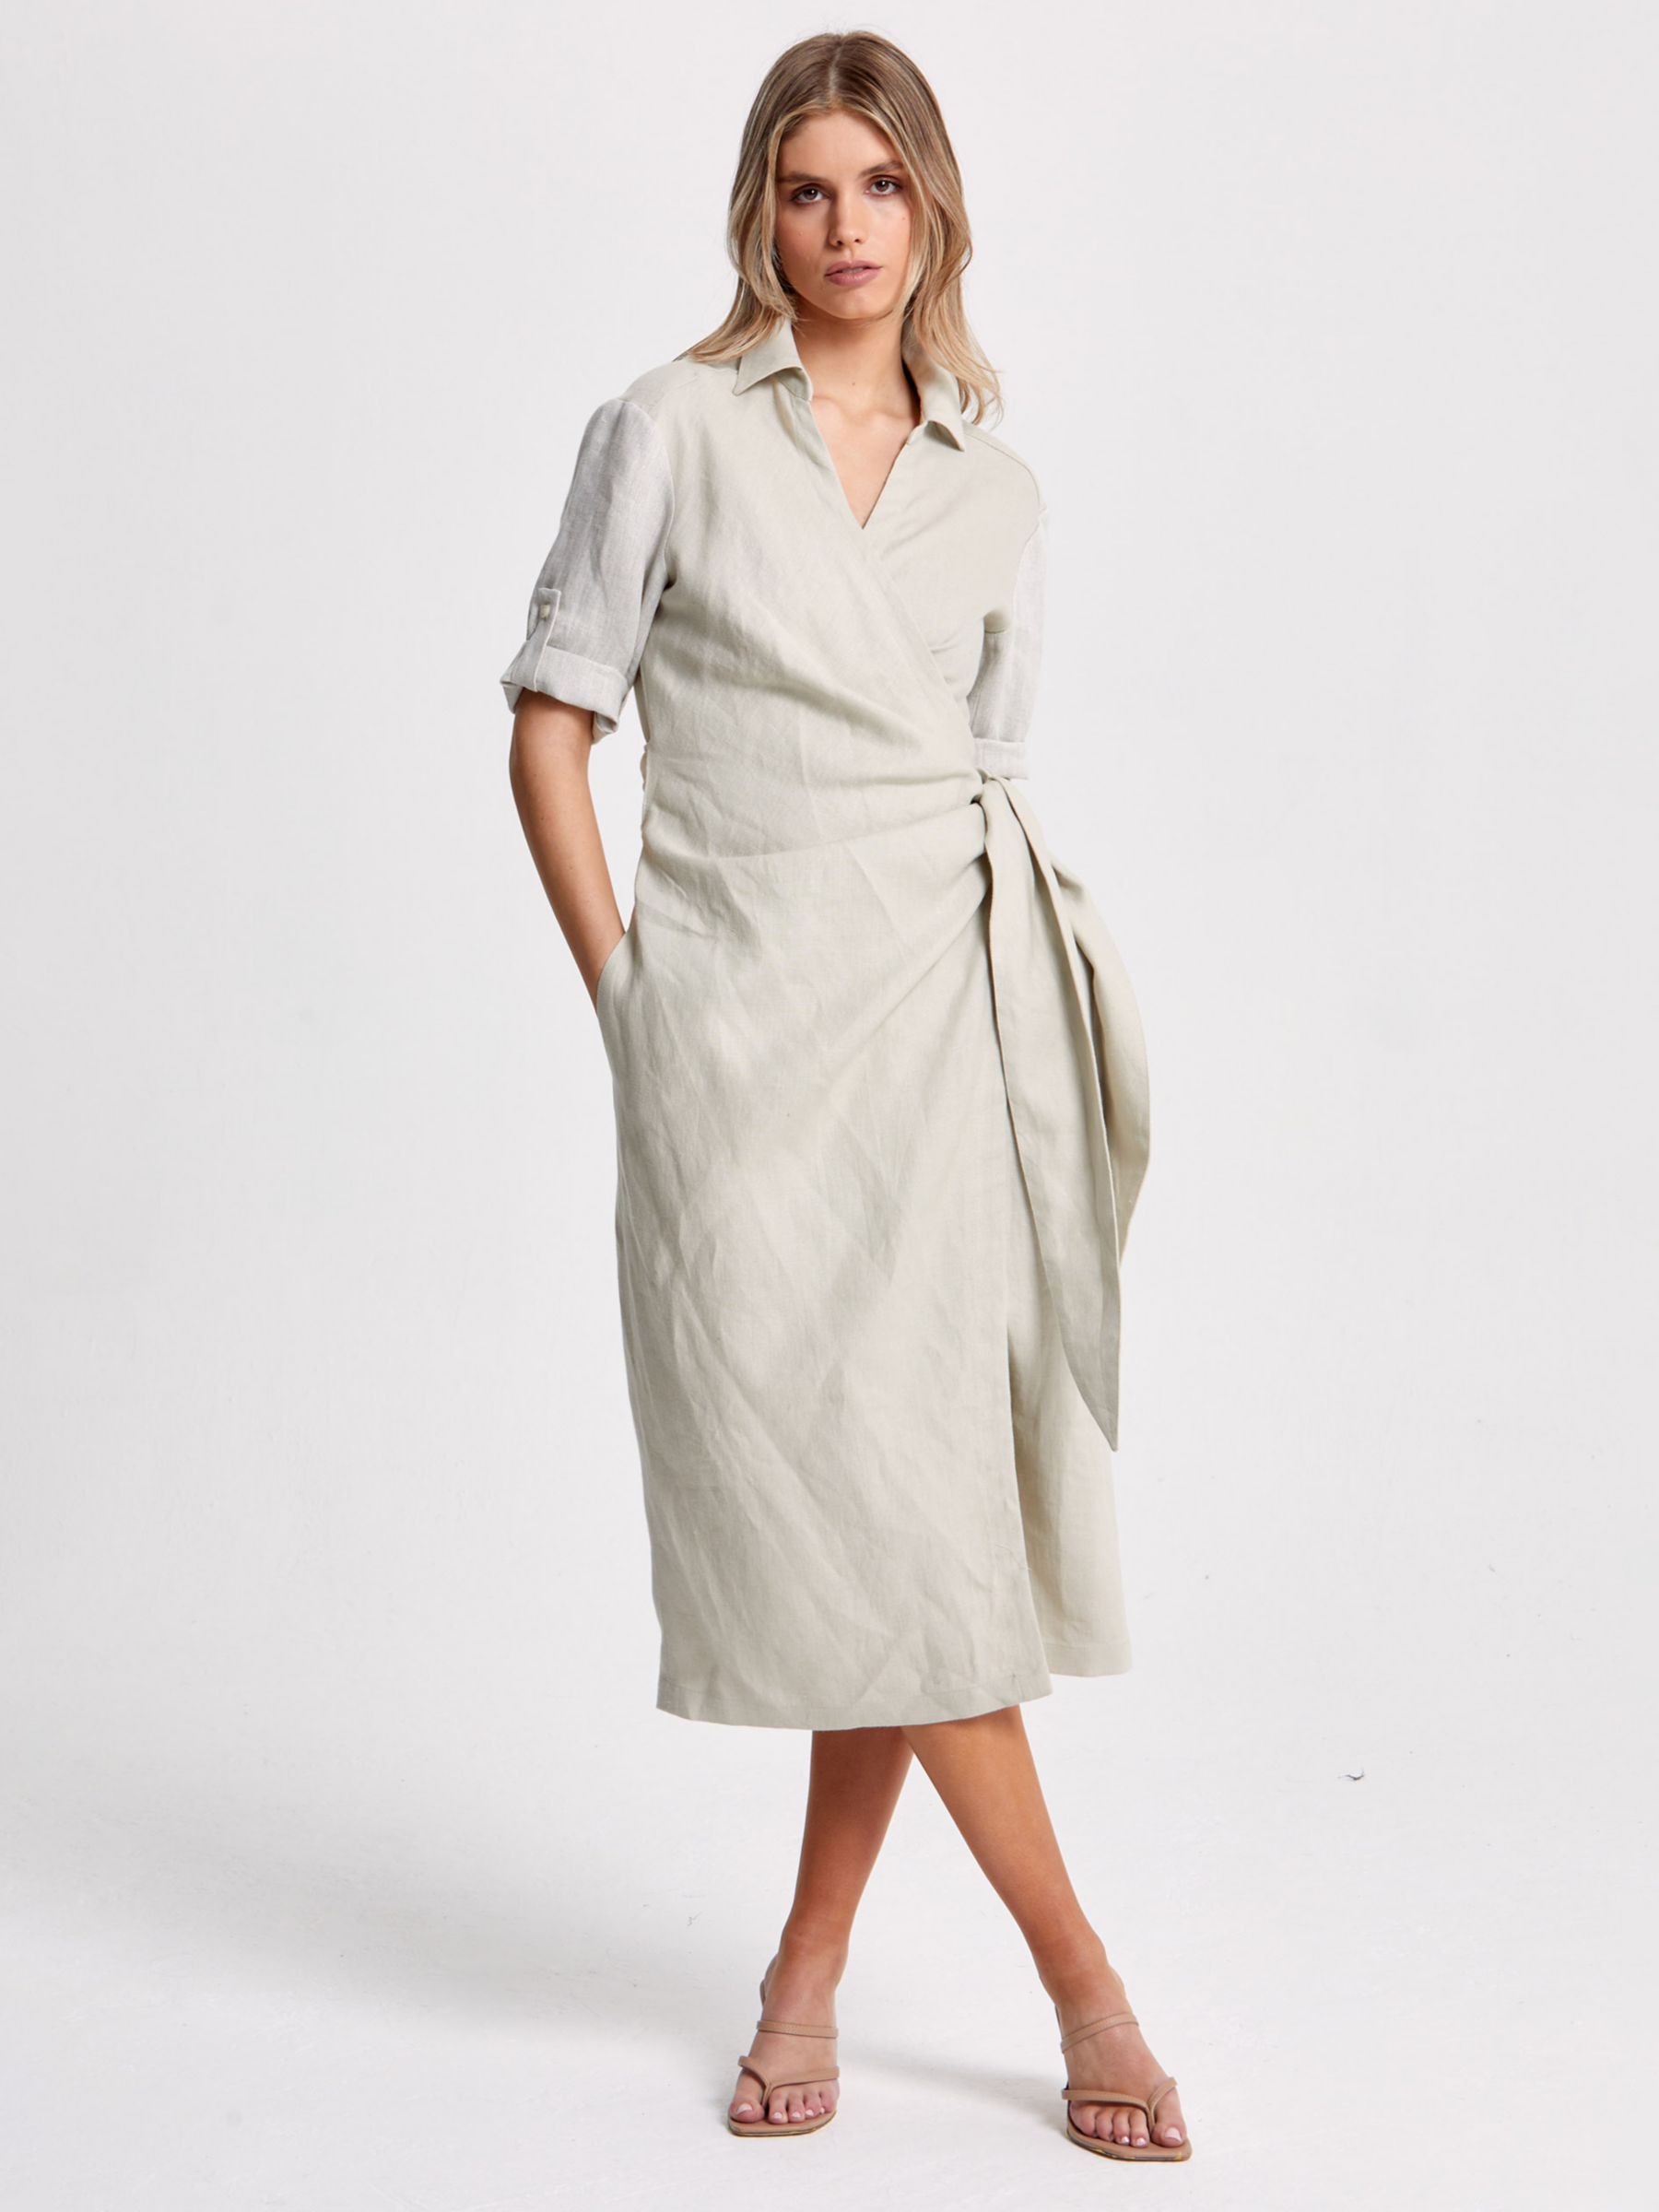 Helen McAlinden Leonne Plain Linen Wrap Dress, Oatmeal